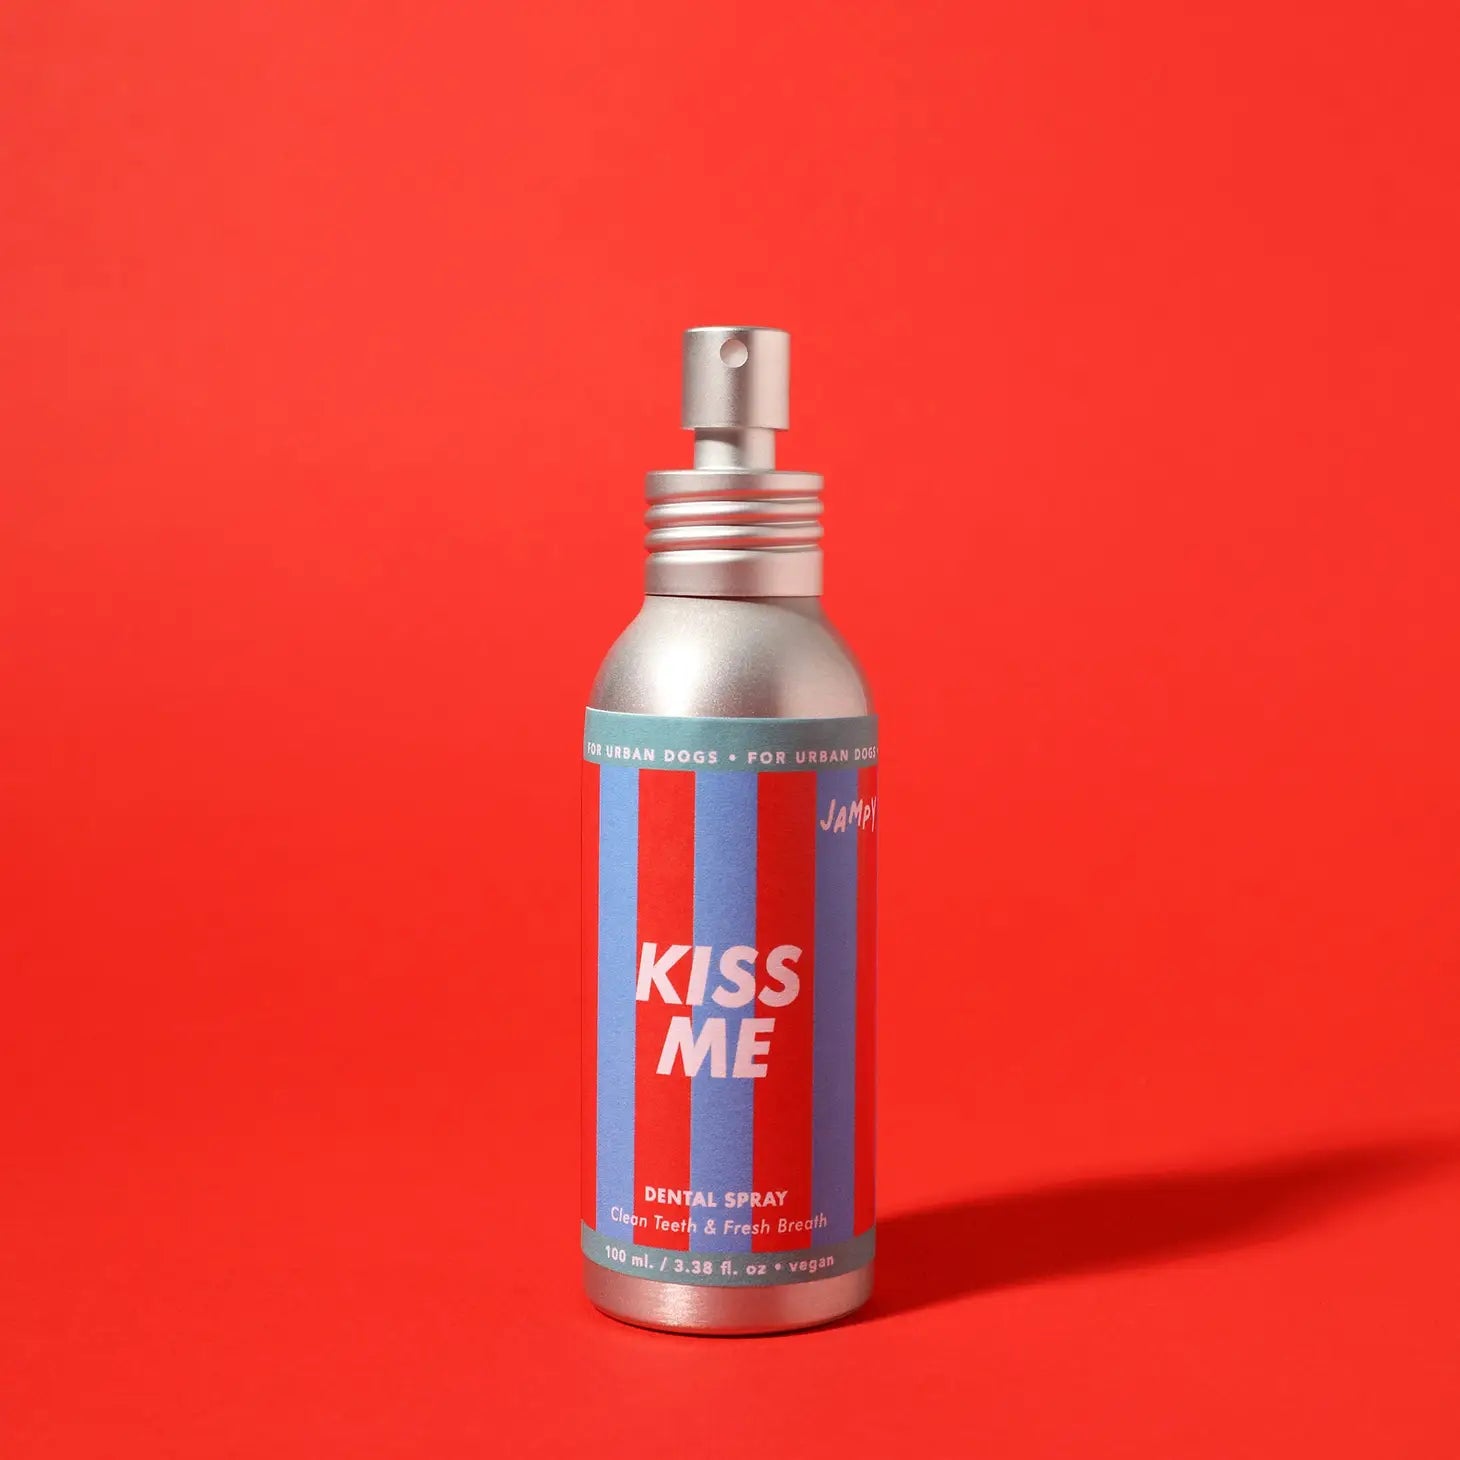 Kiss Me | Dental Spray